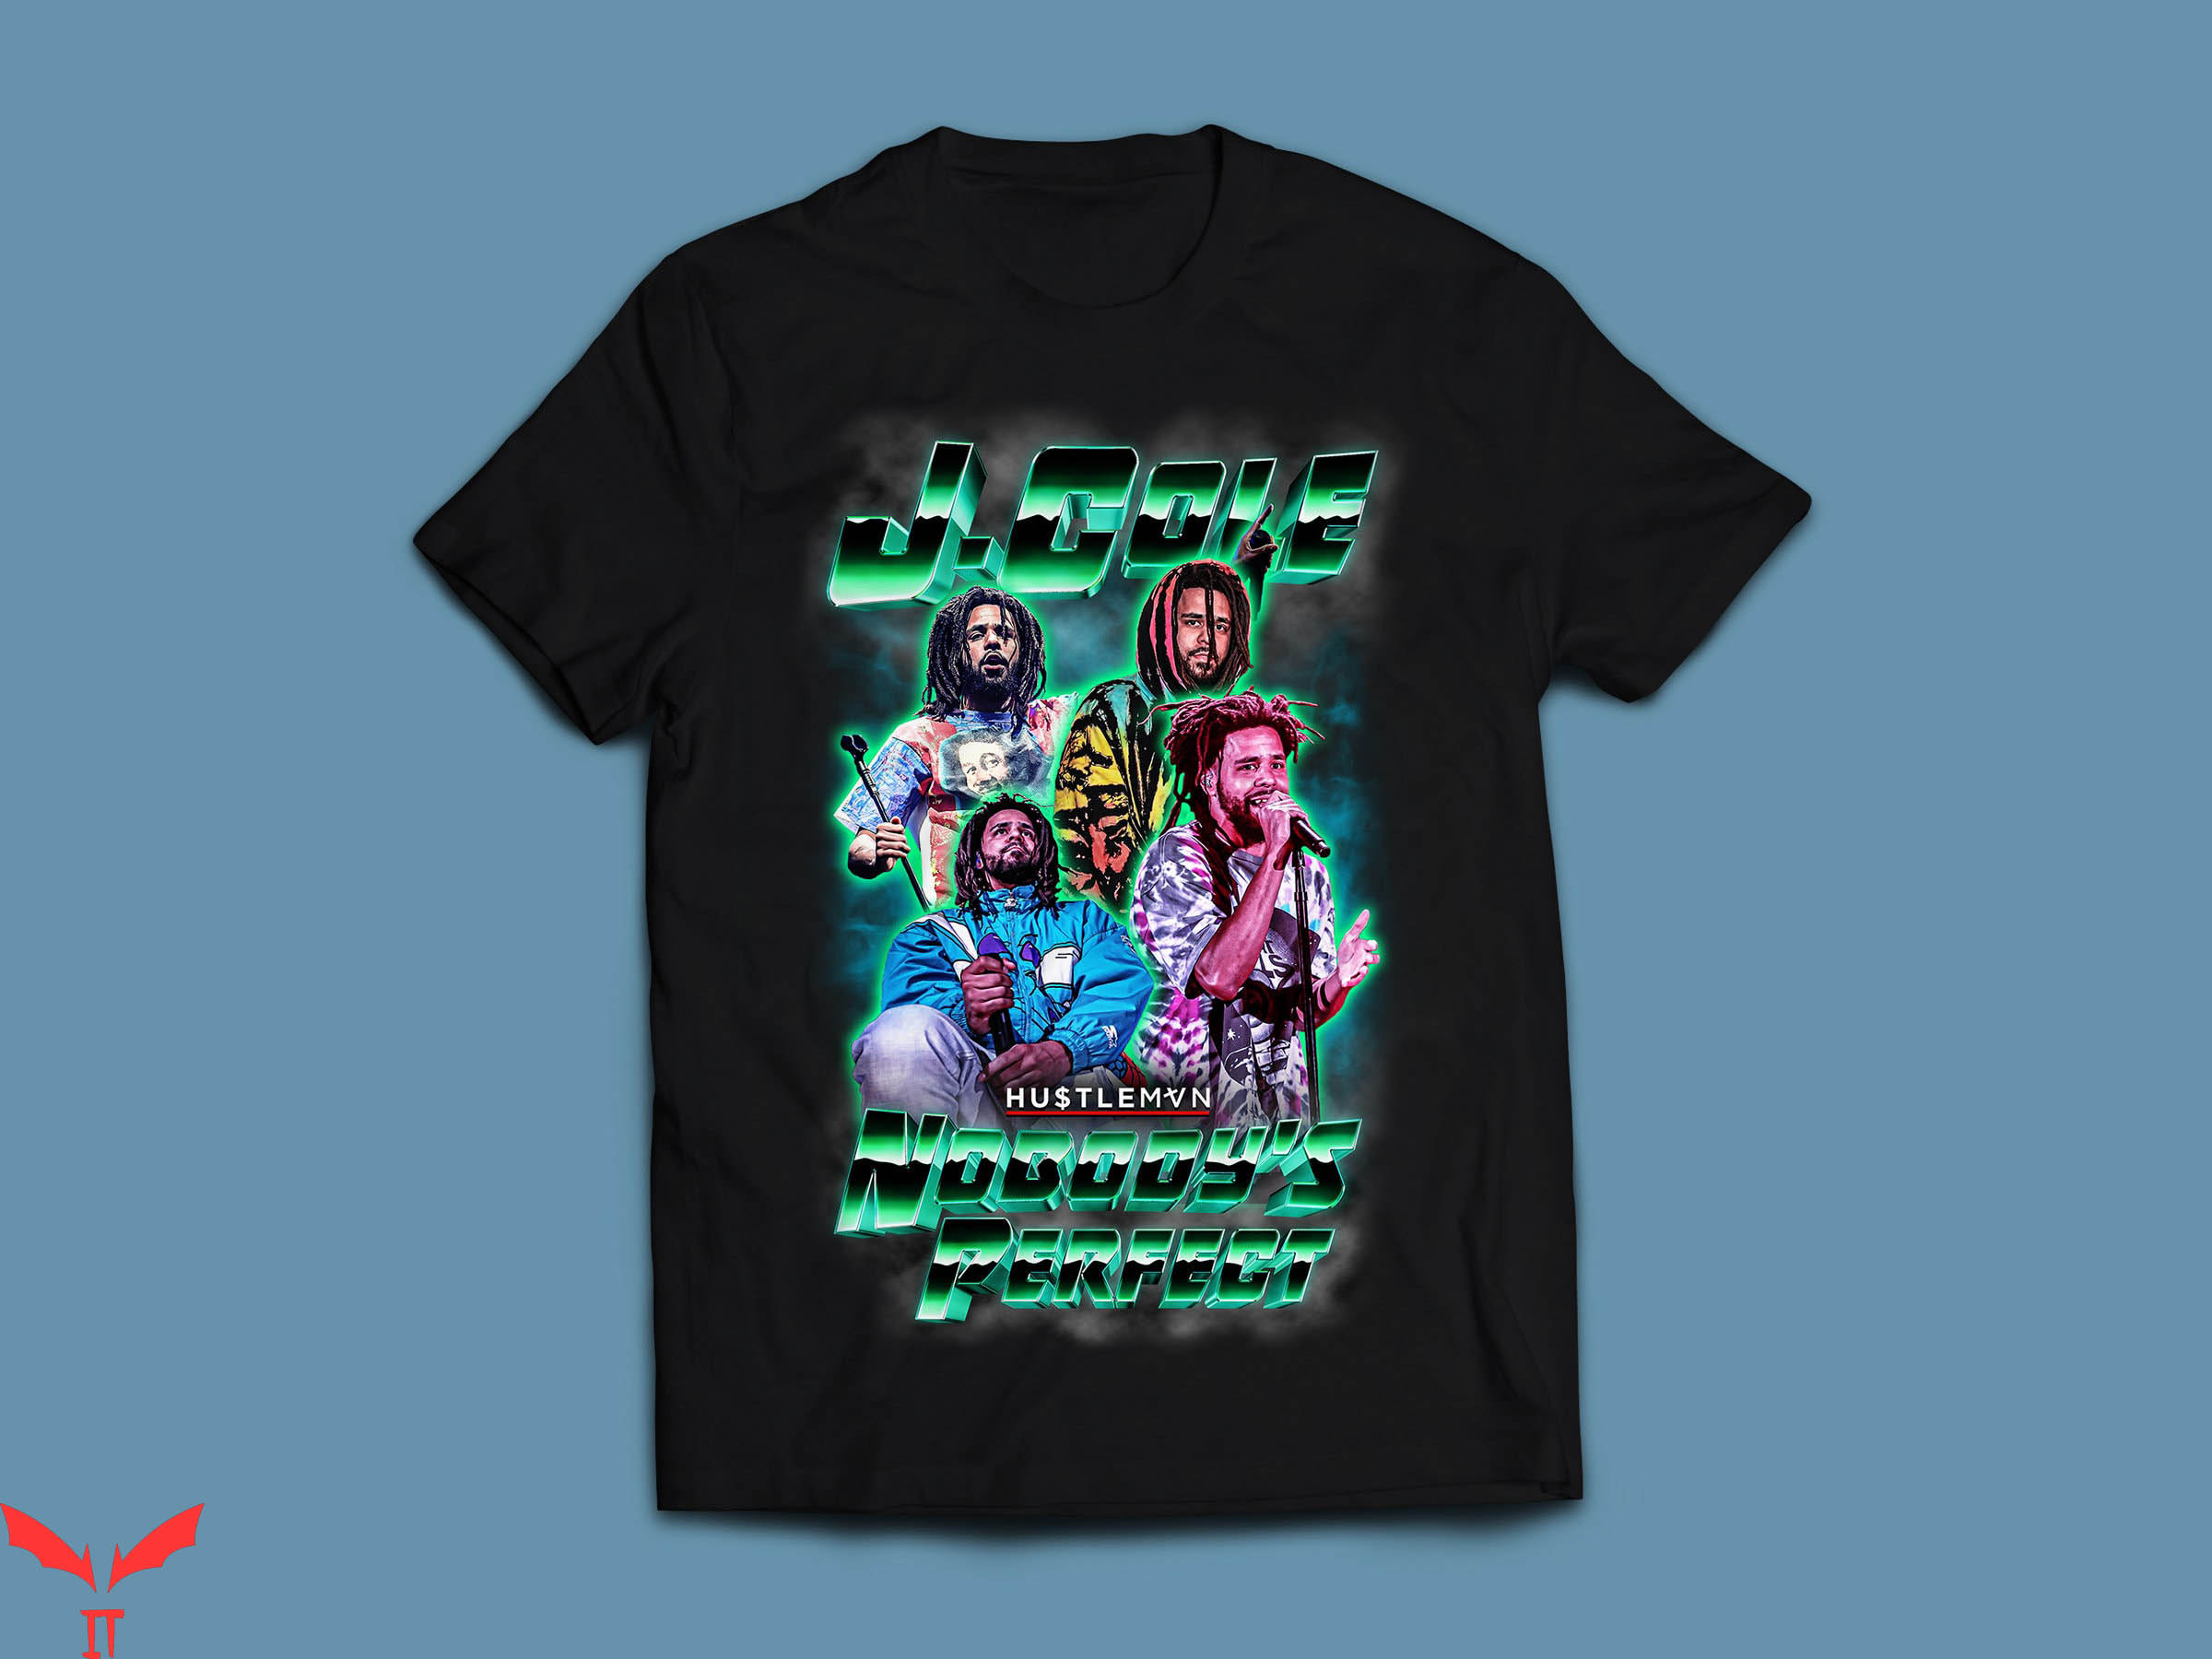 J Cole Vintage T-Shirt Hip Hop Retro Rap Music Tee Shirt